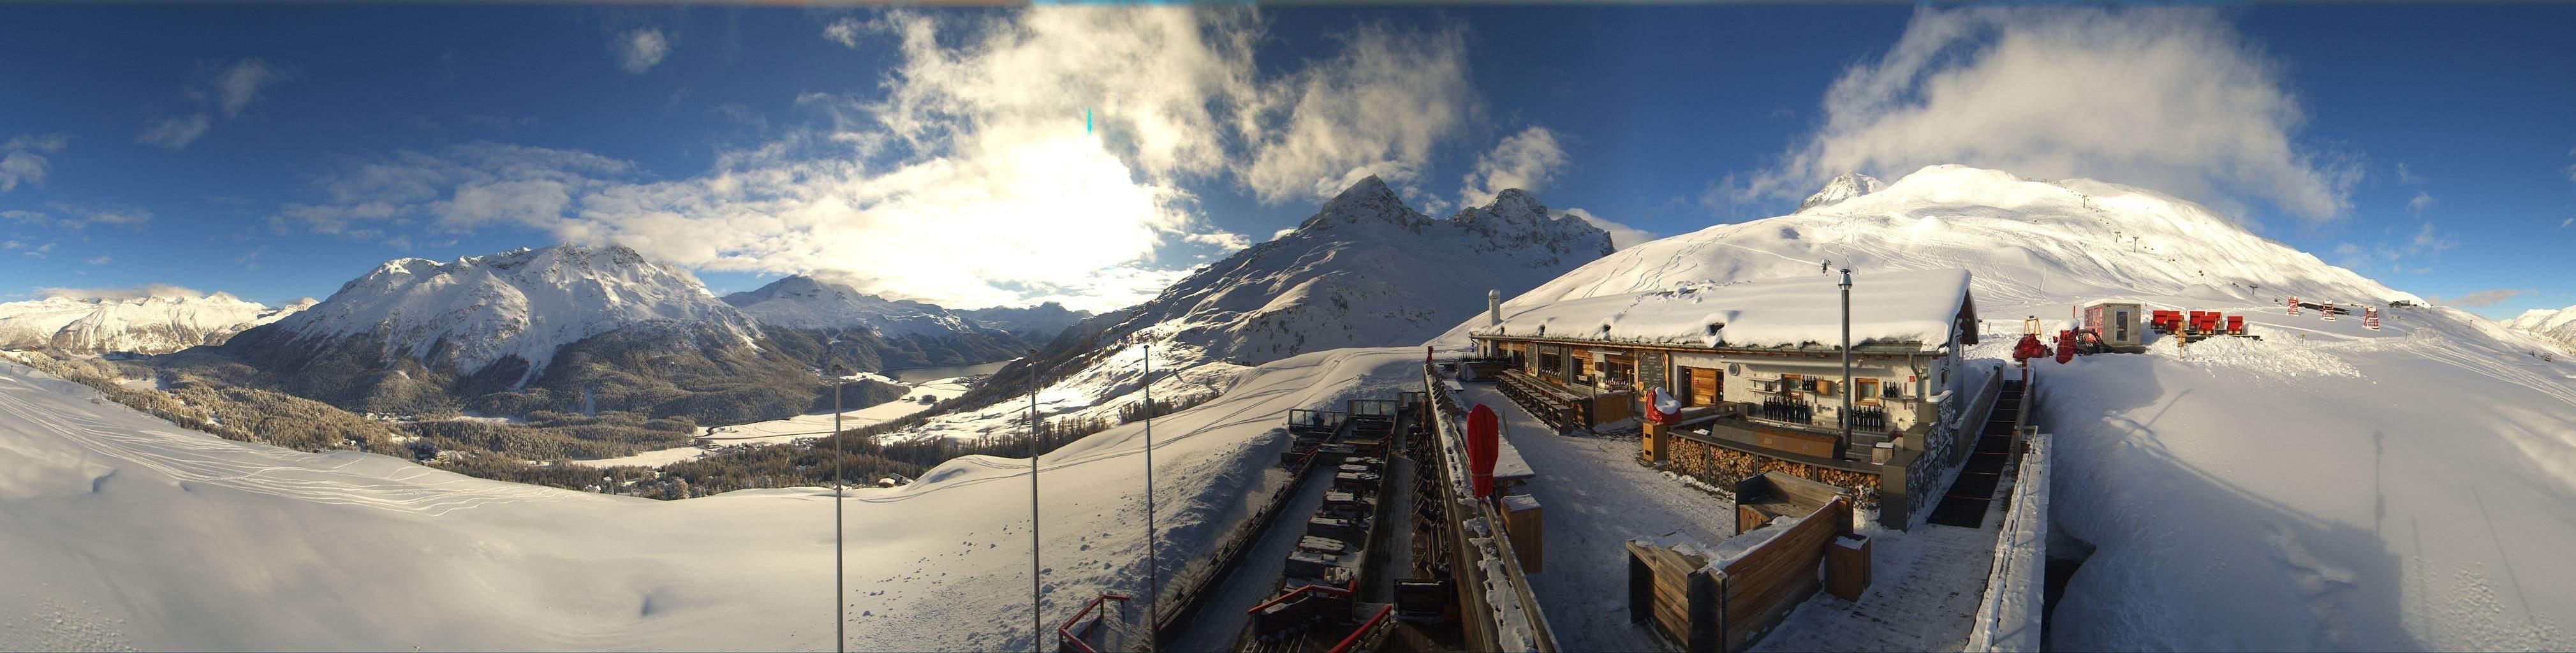 Schneesportgebiet Engadin St. Moritz